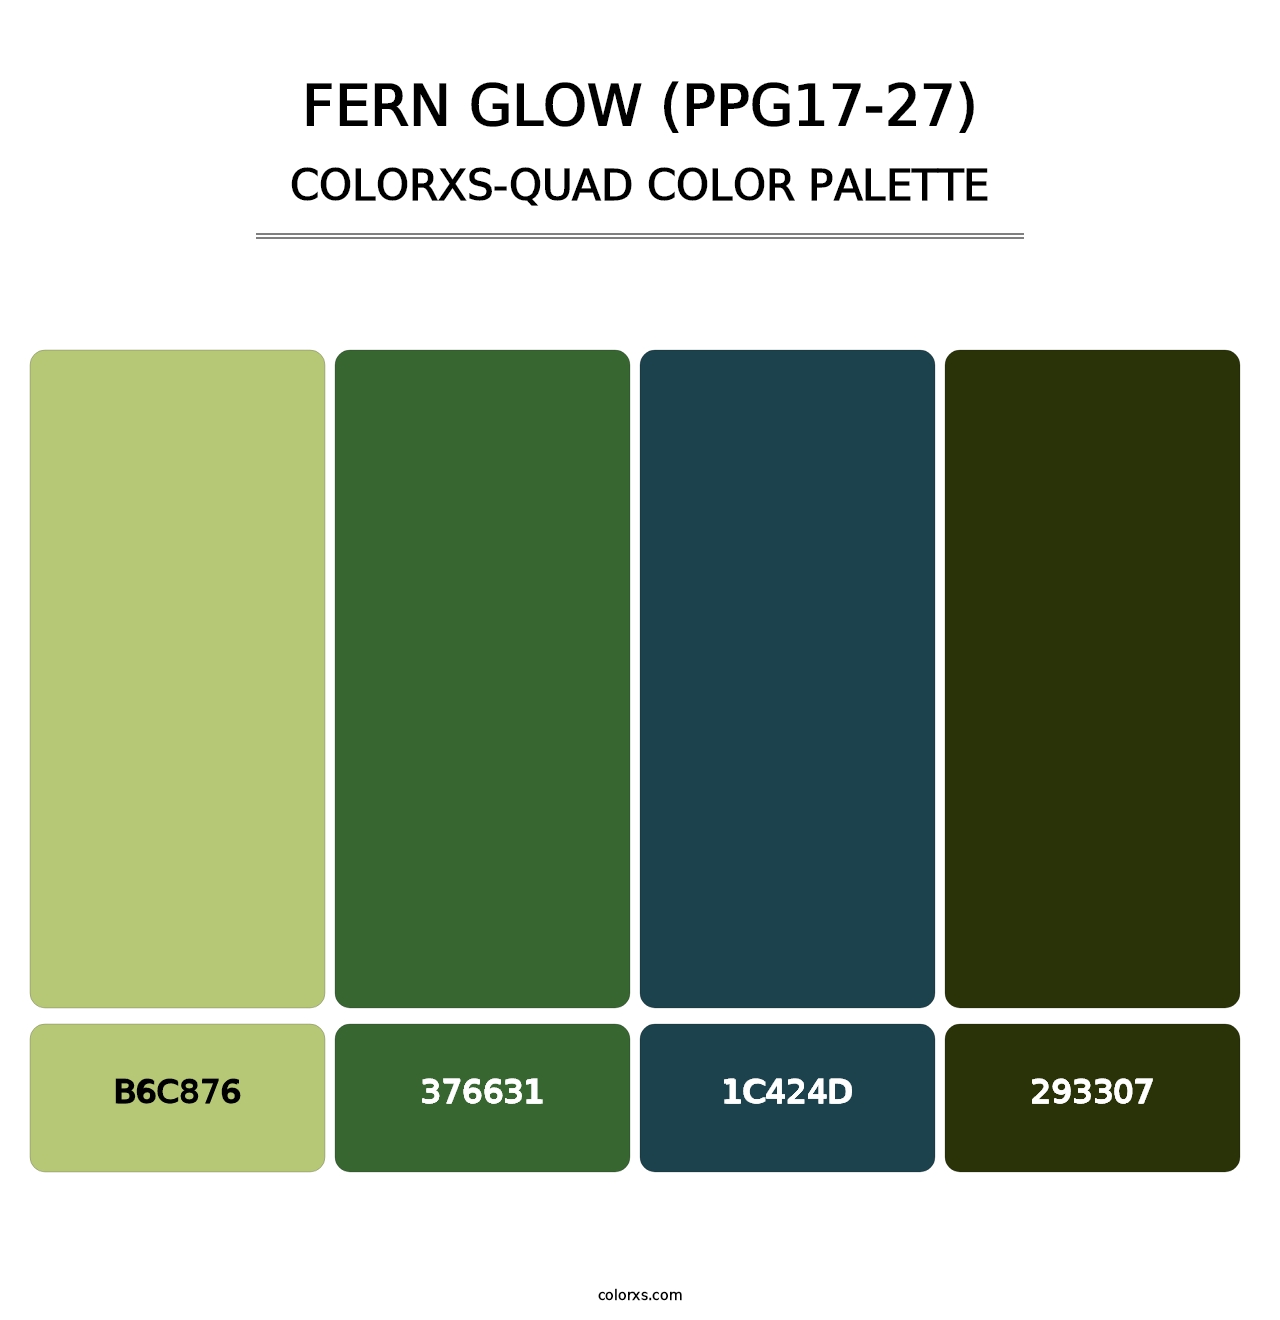 Fern Glow (PPG17-27) - Colorxs Quad Palette